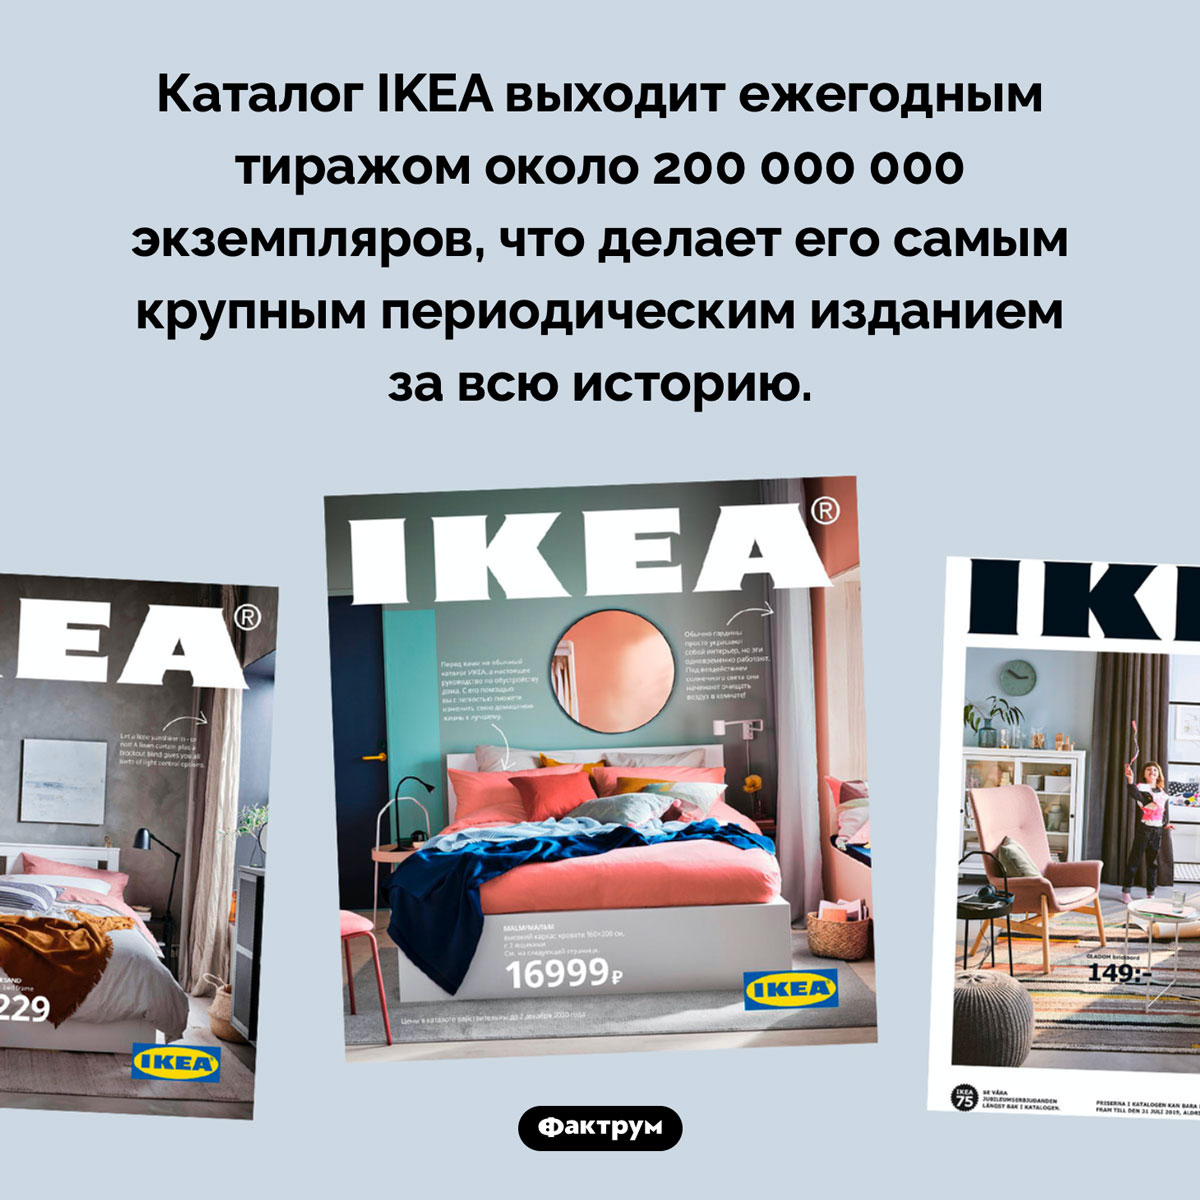 Самый крупный тираж периодического издания. Каталог IKEA выходит ежегодным тиражом около 200 000 000 экземпляров, что делает его самым крупным периодическим изданием за всю историю.